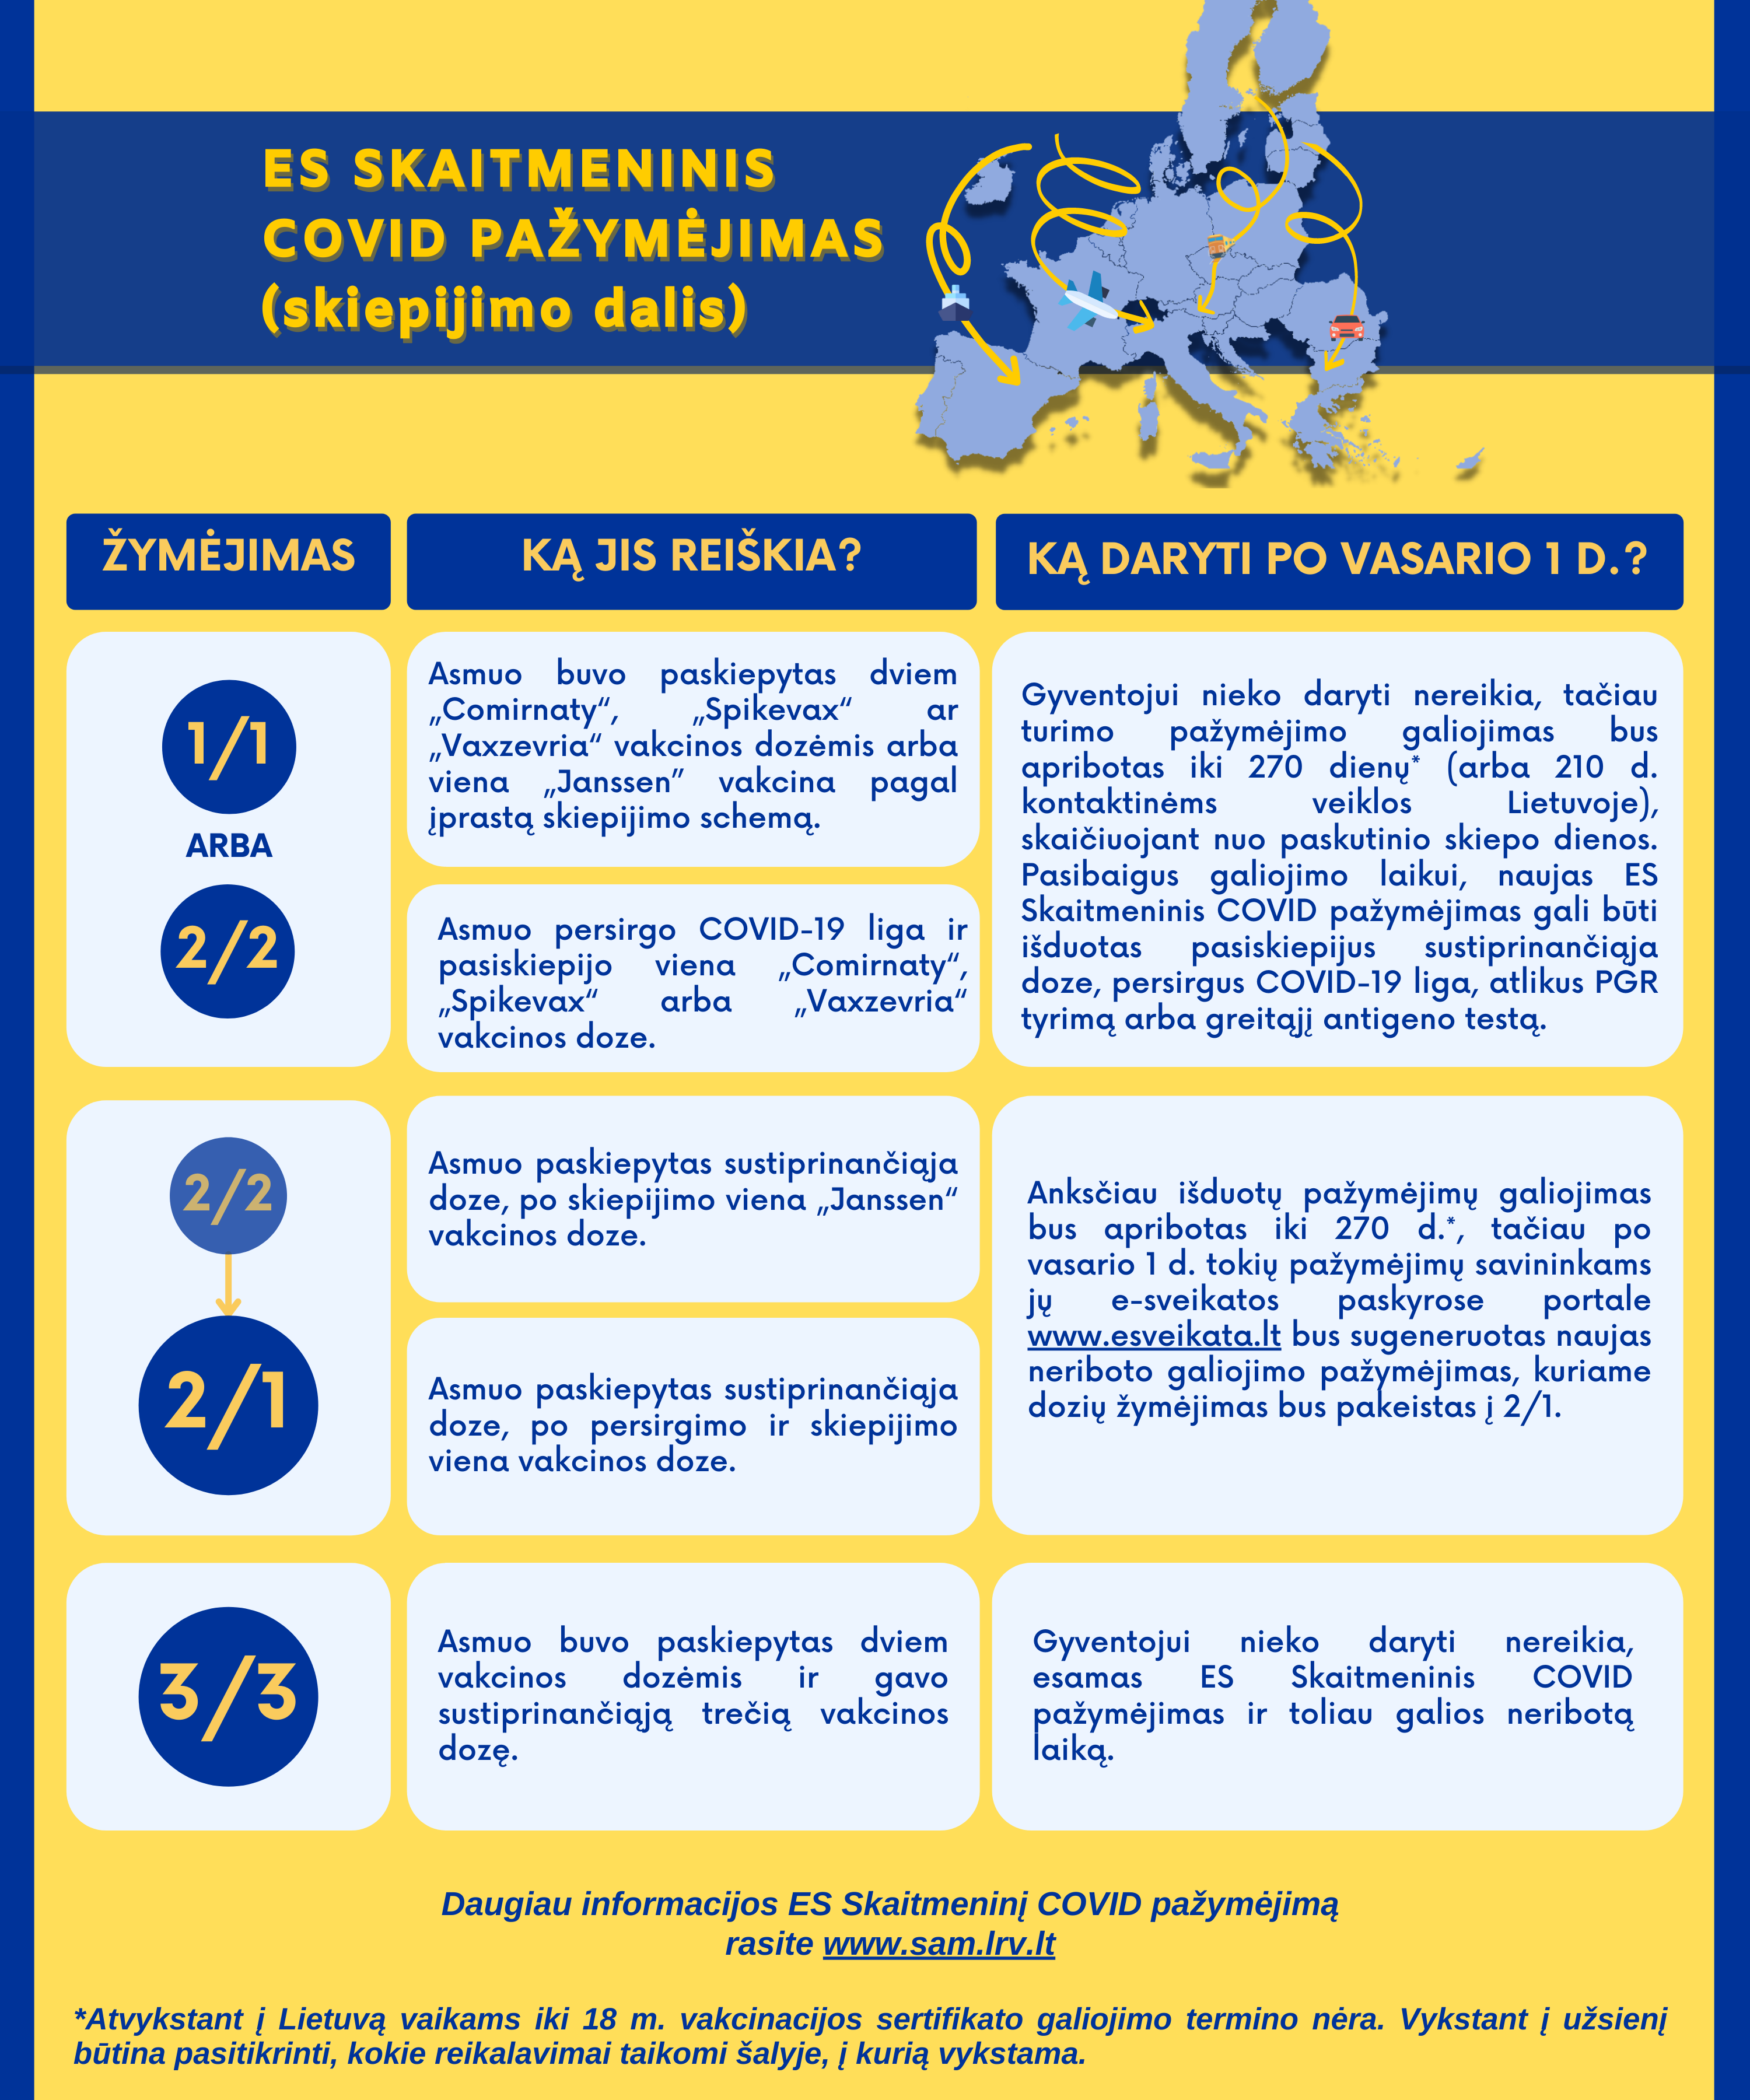 ES Skaitmeninis COVID pažymėjimas po pilnos vakcinacijos bus išduodamas 270-čiai dienų, o Lietuvoje galios septynis mėnesius